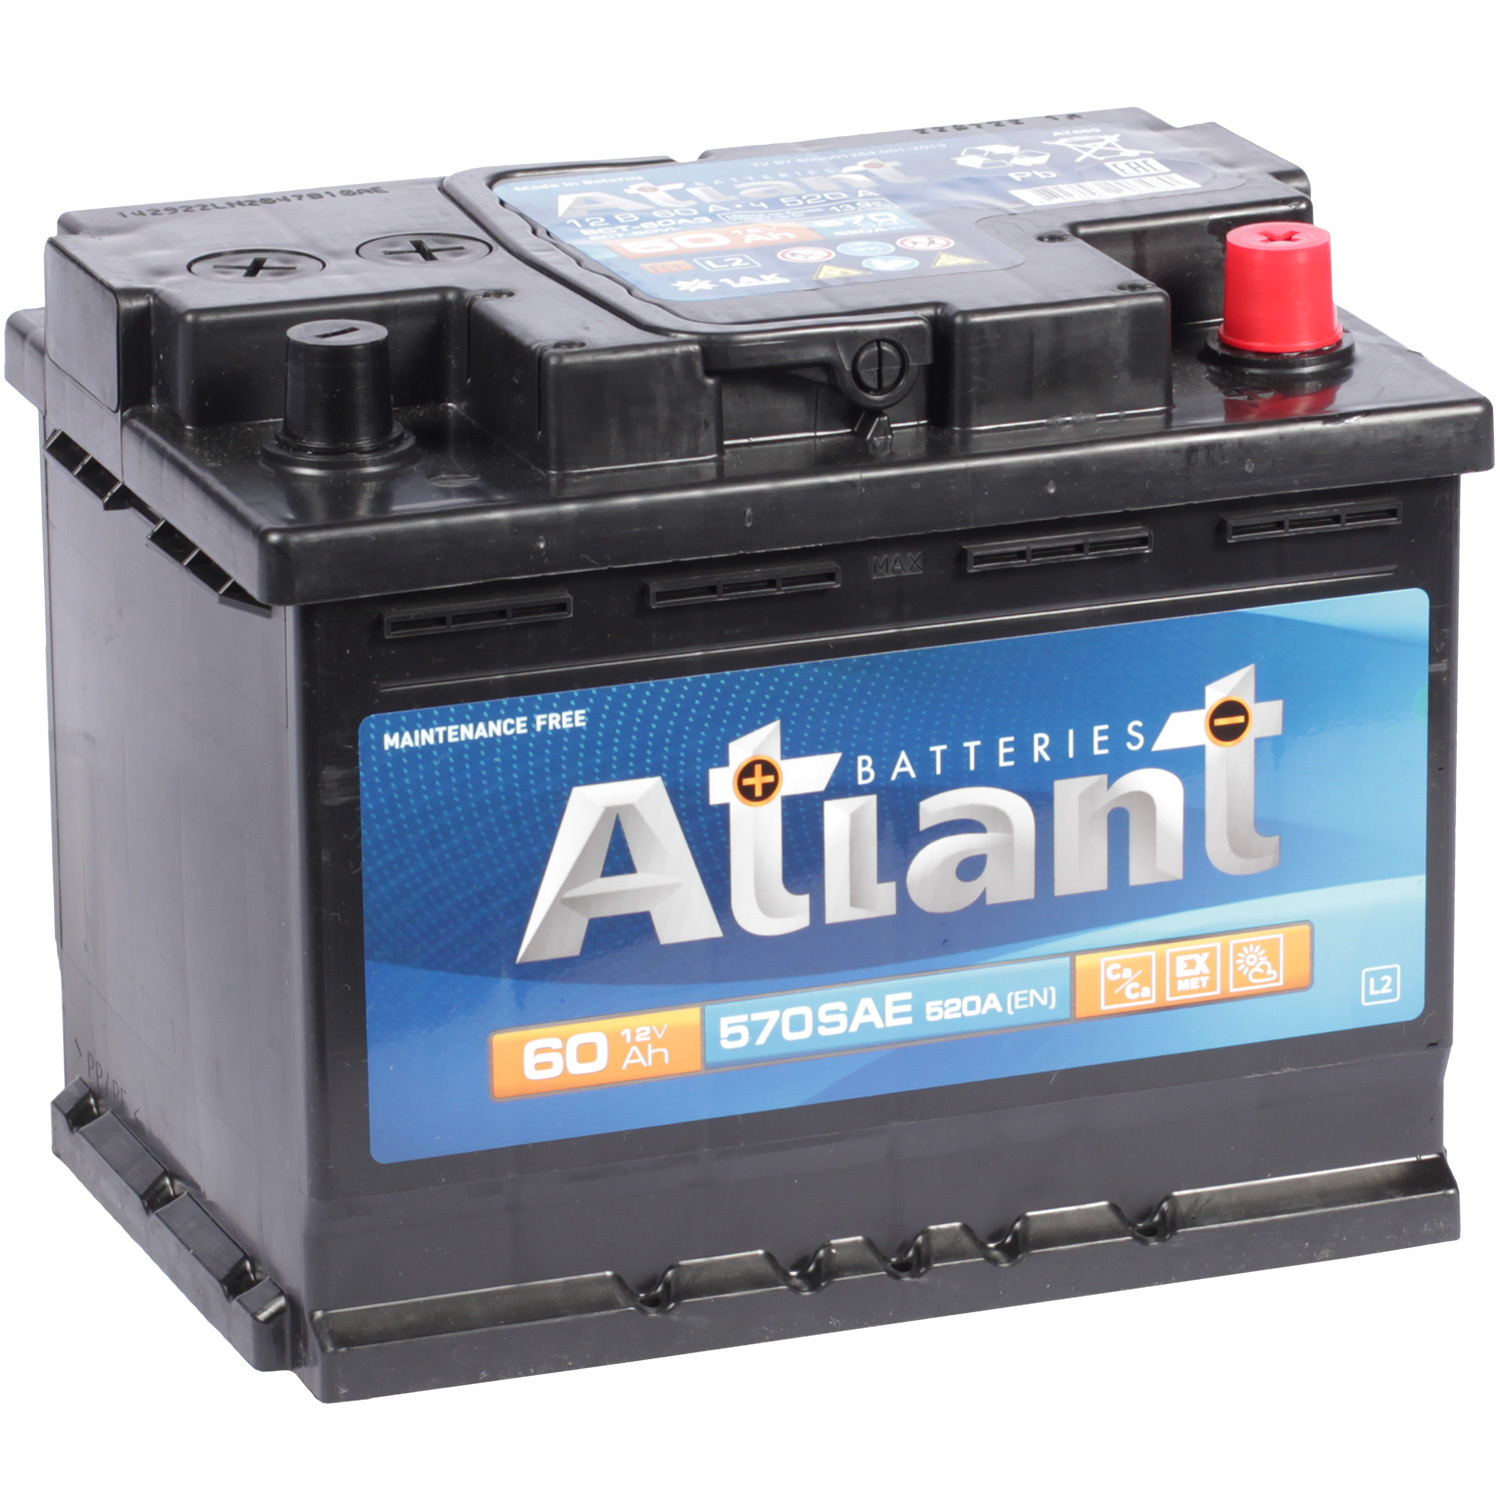 Atlant Автомобильный аккумулятор Atlant 60 Ач обратная полярность L2 energizer автомобильный аккумулятор energizer plus 60 ач обратная полярность l2